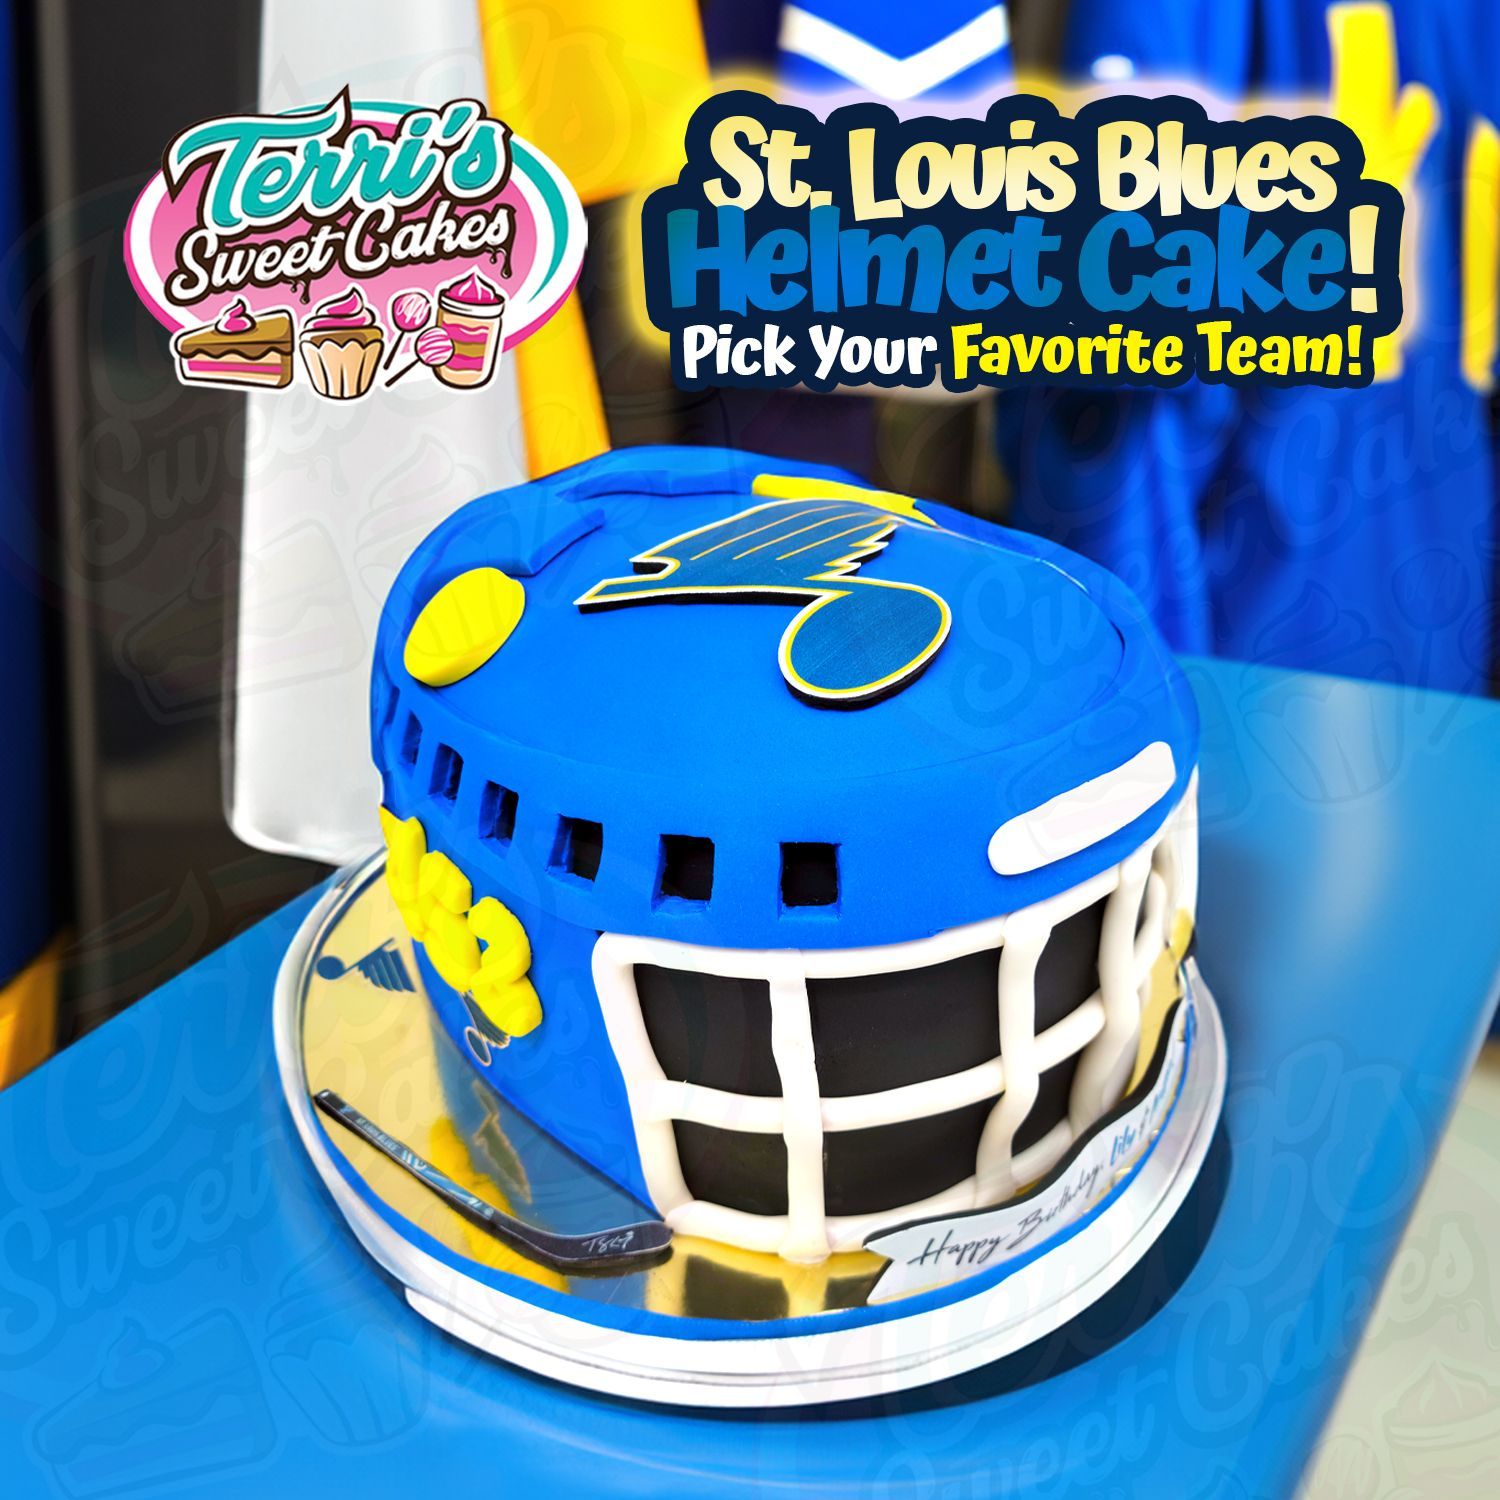 St. Louis Blues Helmet Cake by Terri's Sweet Cakes!